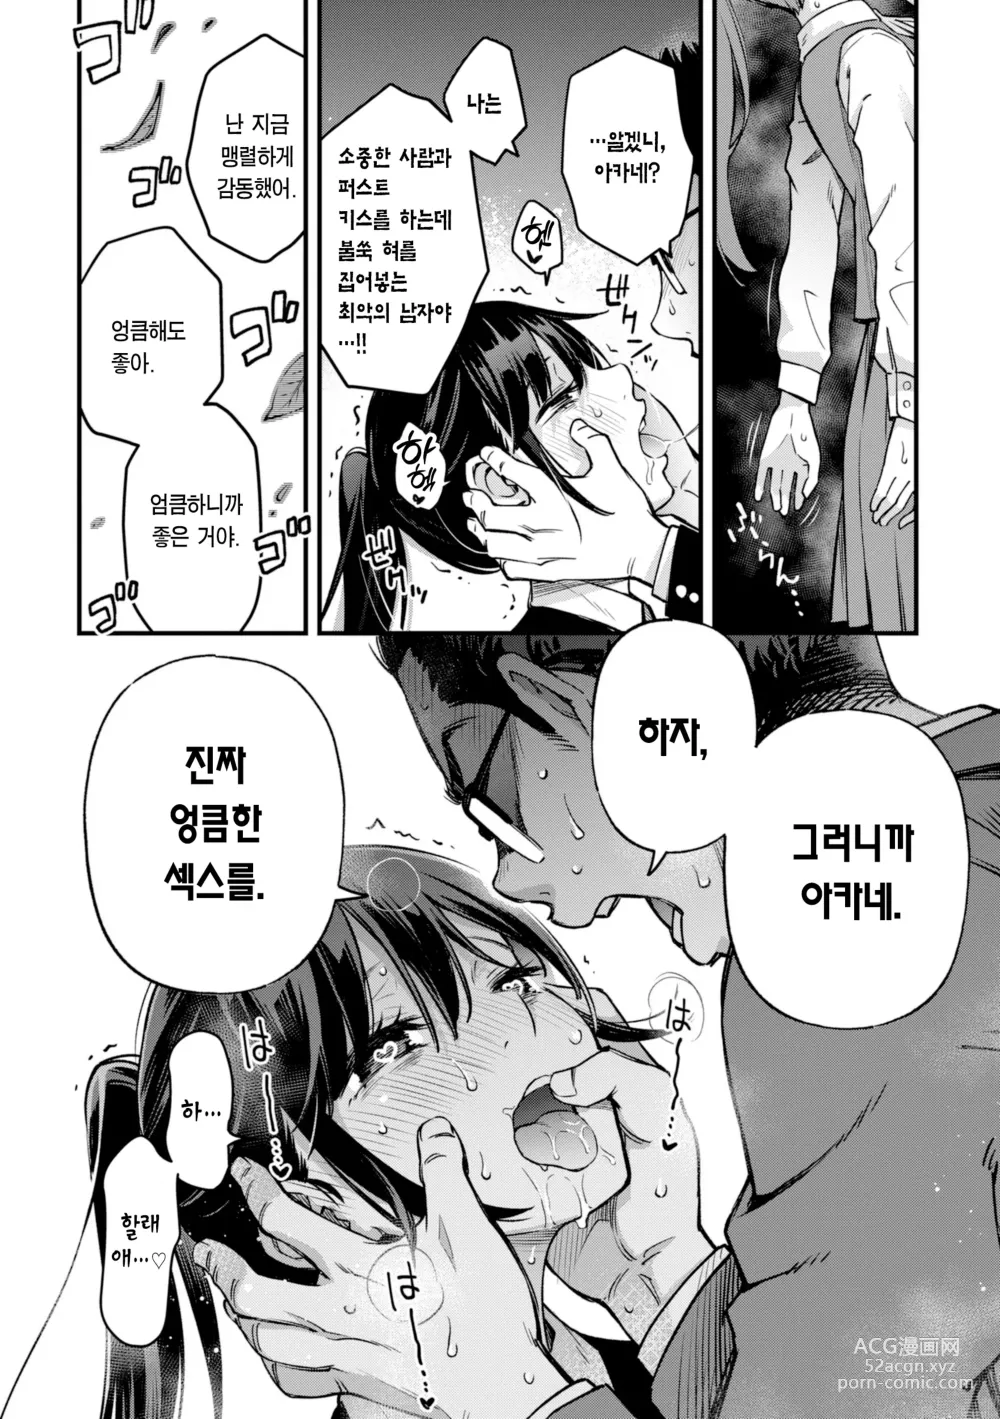 Page 23 of manga 처녀는 발정나면 안 되나요? (decensored)